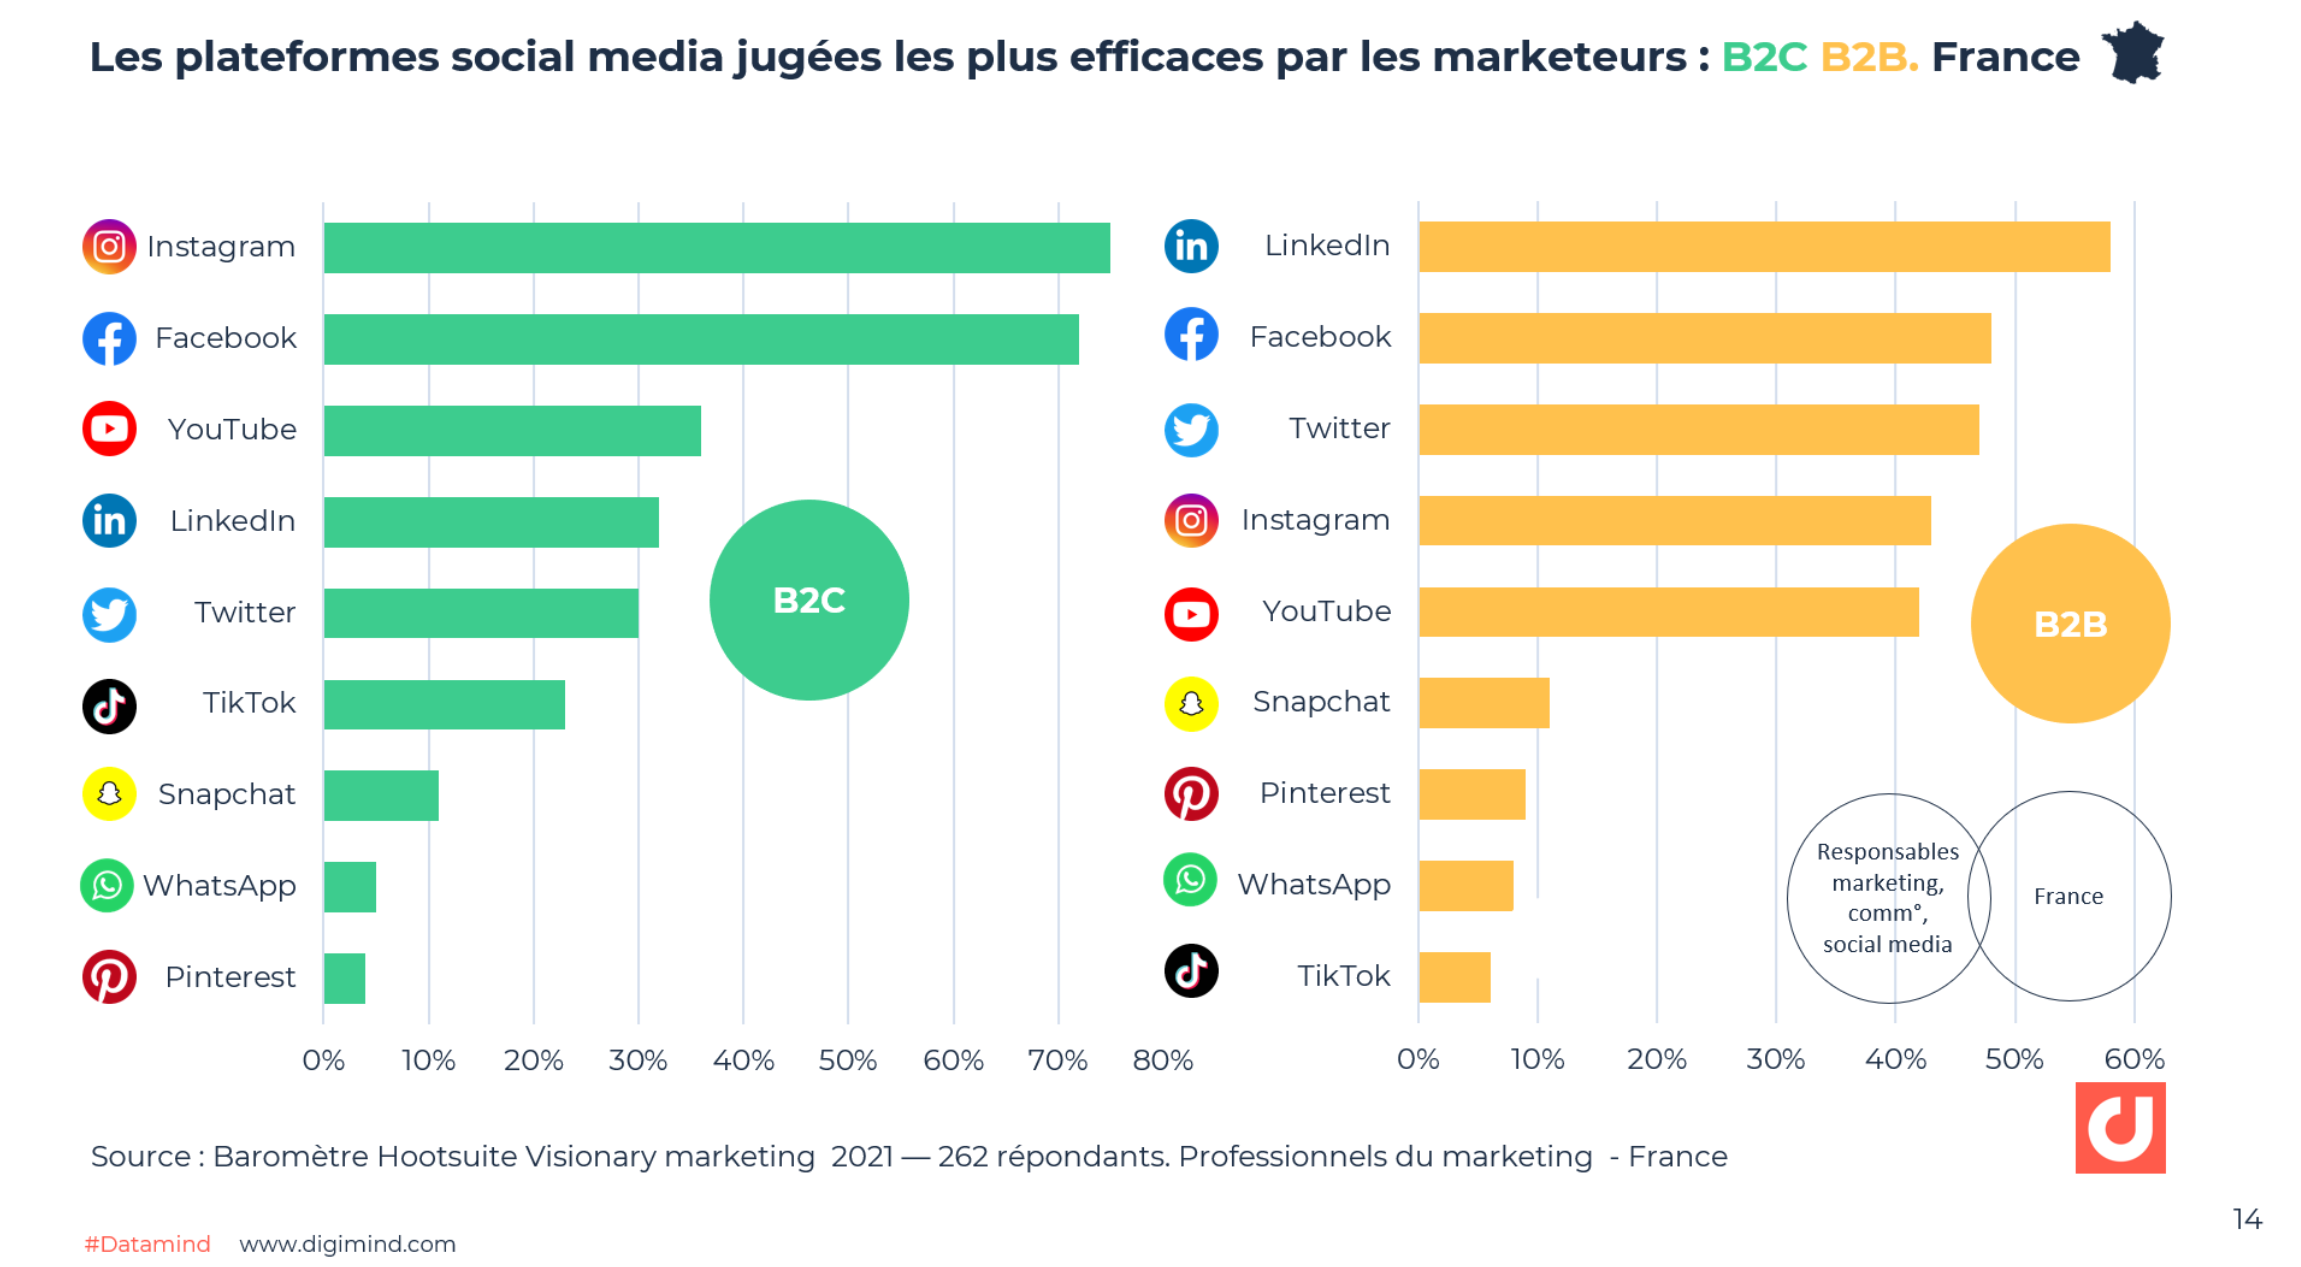 Les plateformes social media jugées les plus efficaces par les marketeurs en France : B2C B2B